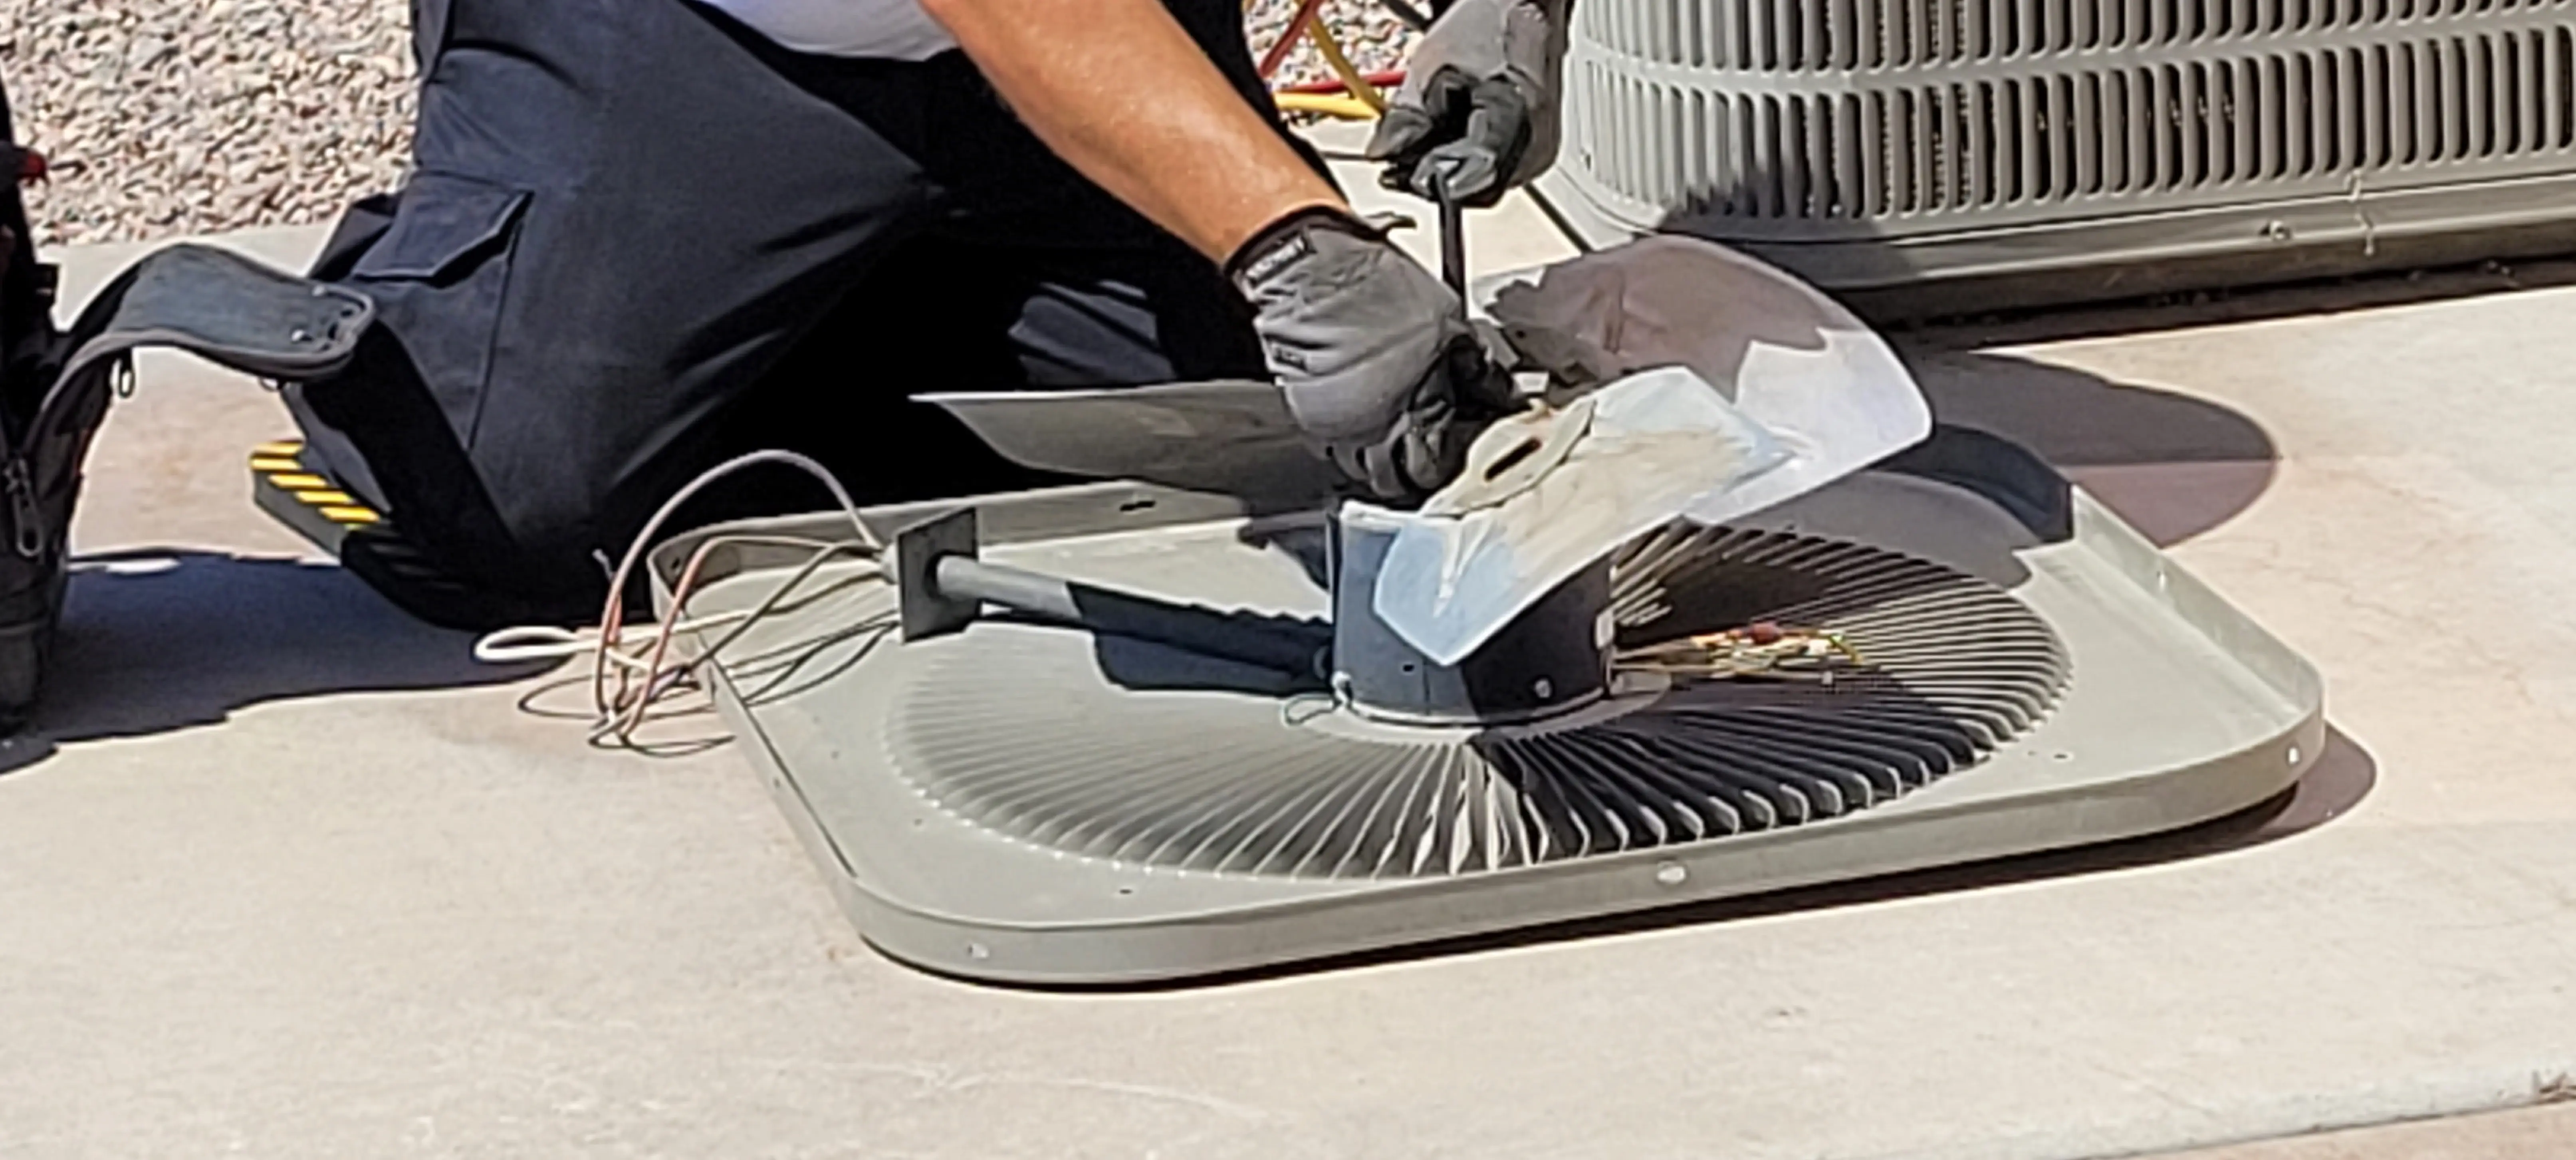 Air-Conditioning-Repair--in-Cibolo-Texas-Air-Conditioning-Repair-4296816-image